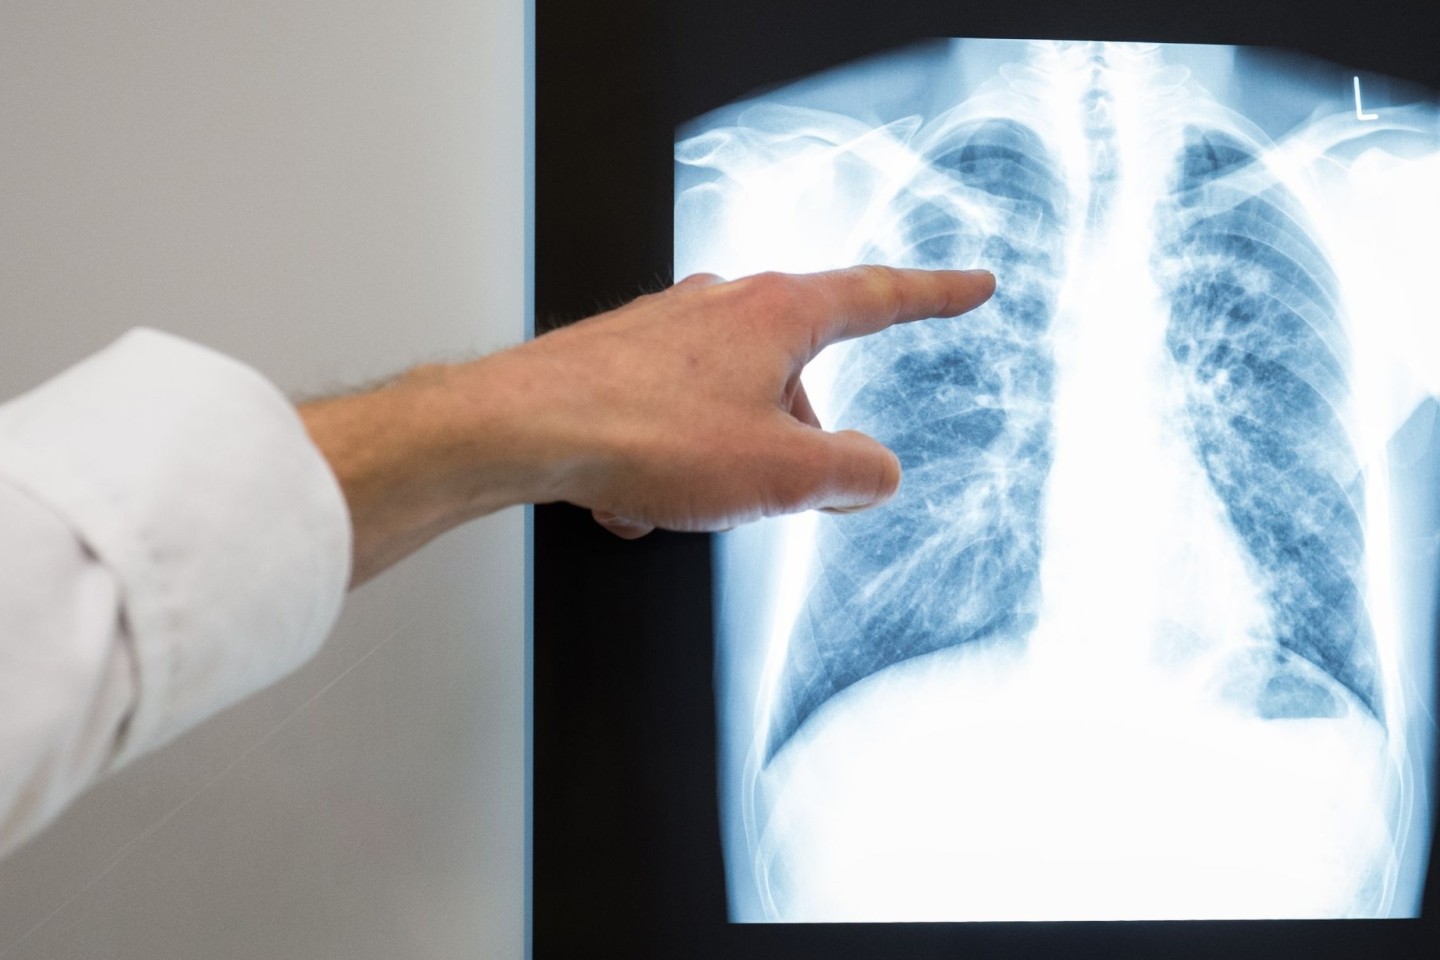 Röntgenbild einer Lunge. Im vergangenem Jahr würden rund 4480 neue Tuberkulose-Fälle in Deutschland registriert.